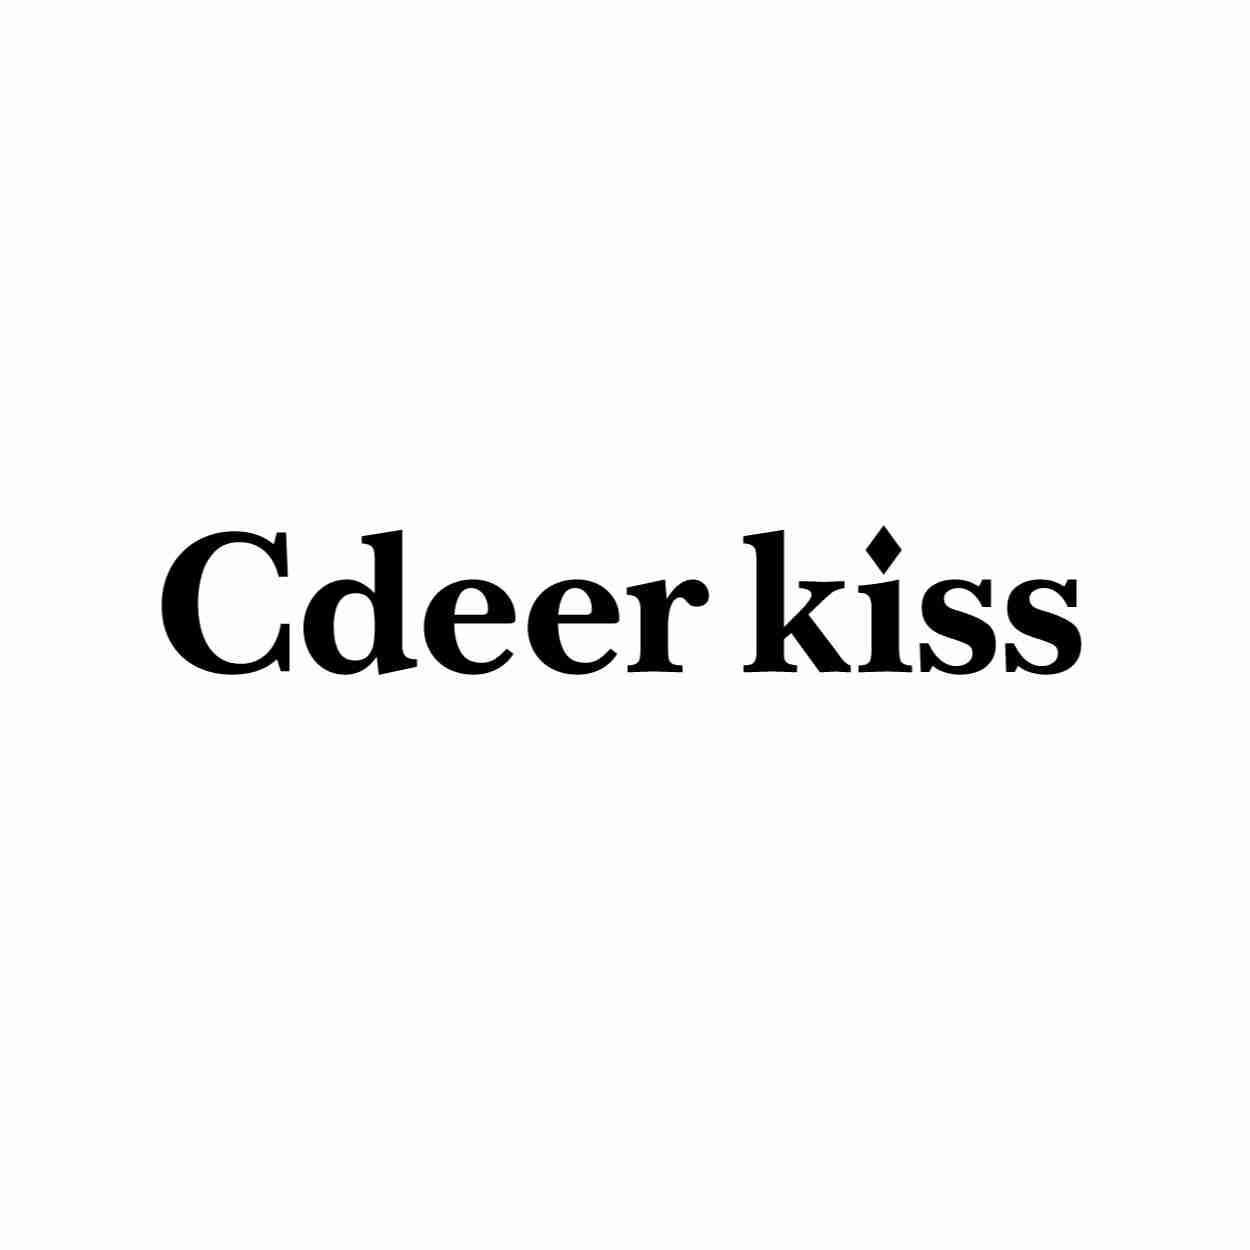 CDEER KISS